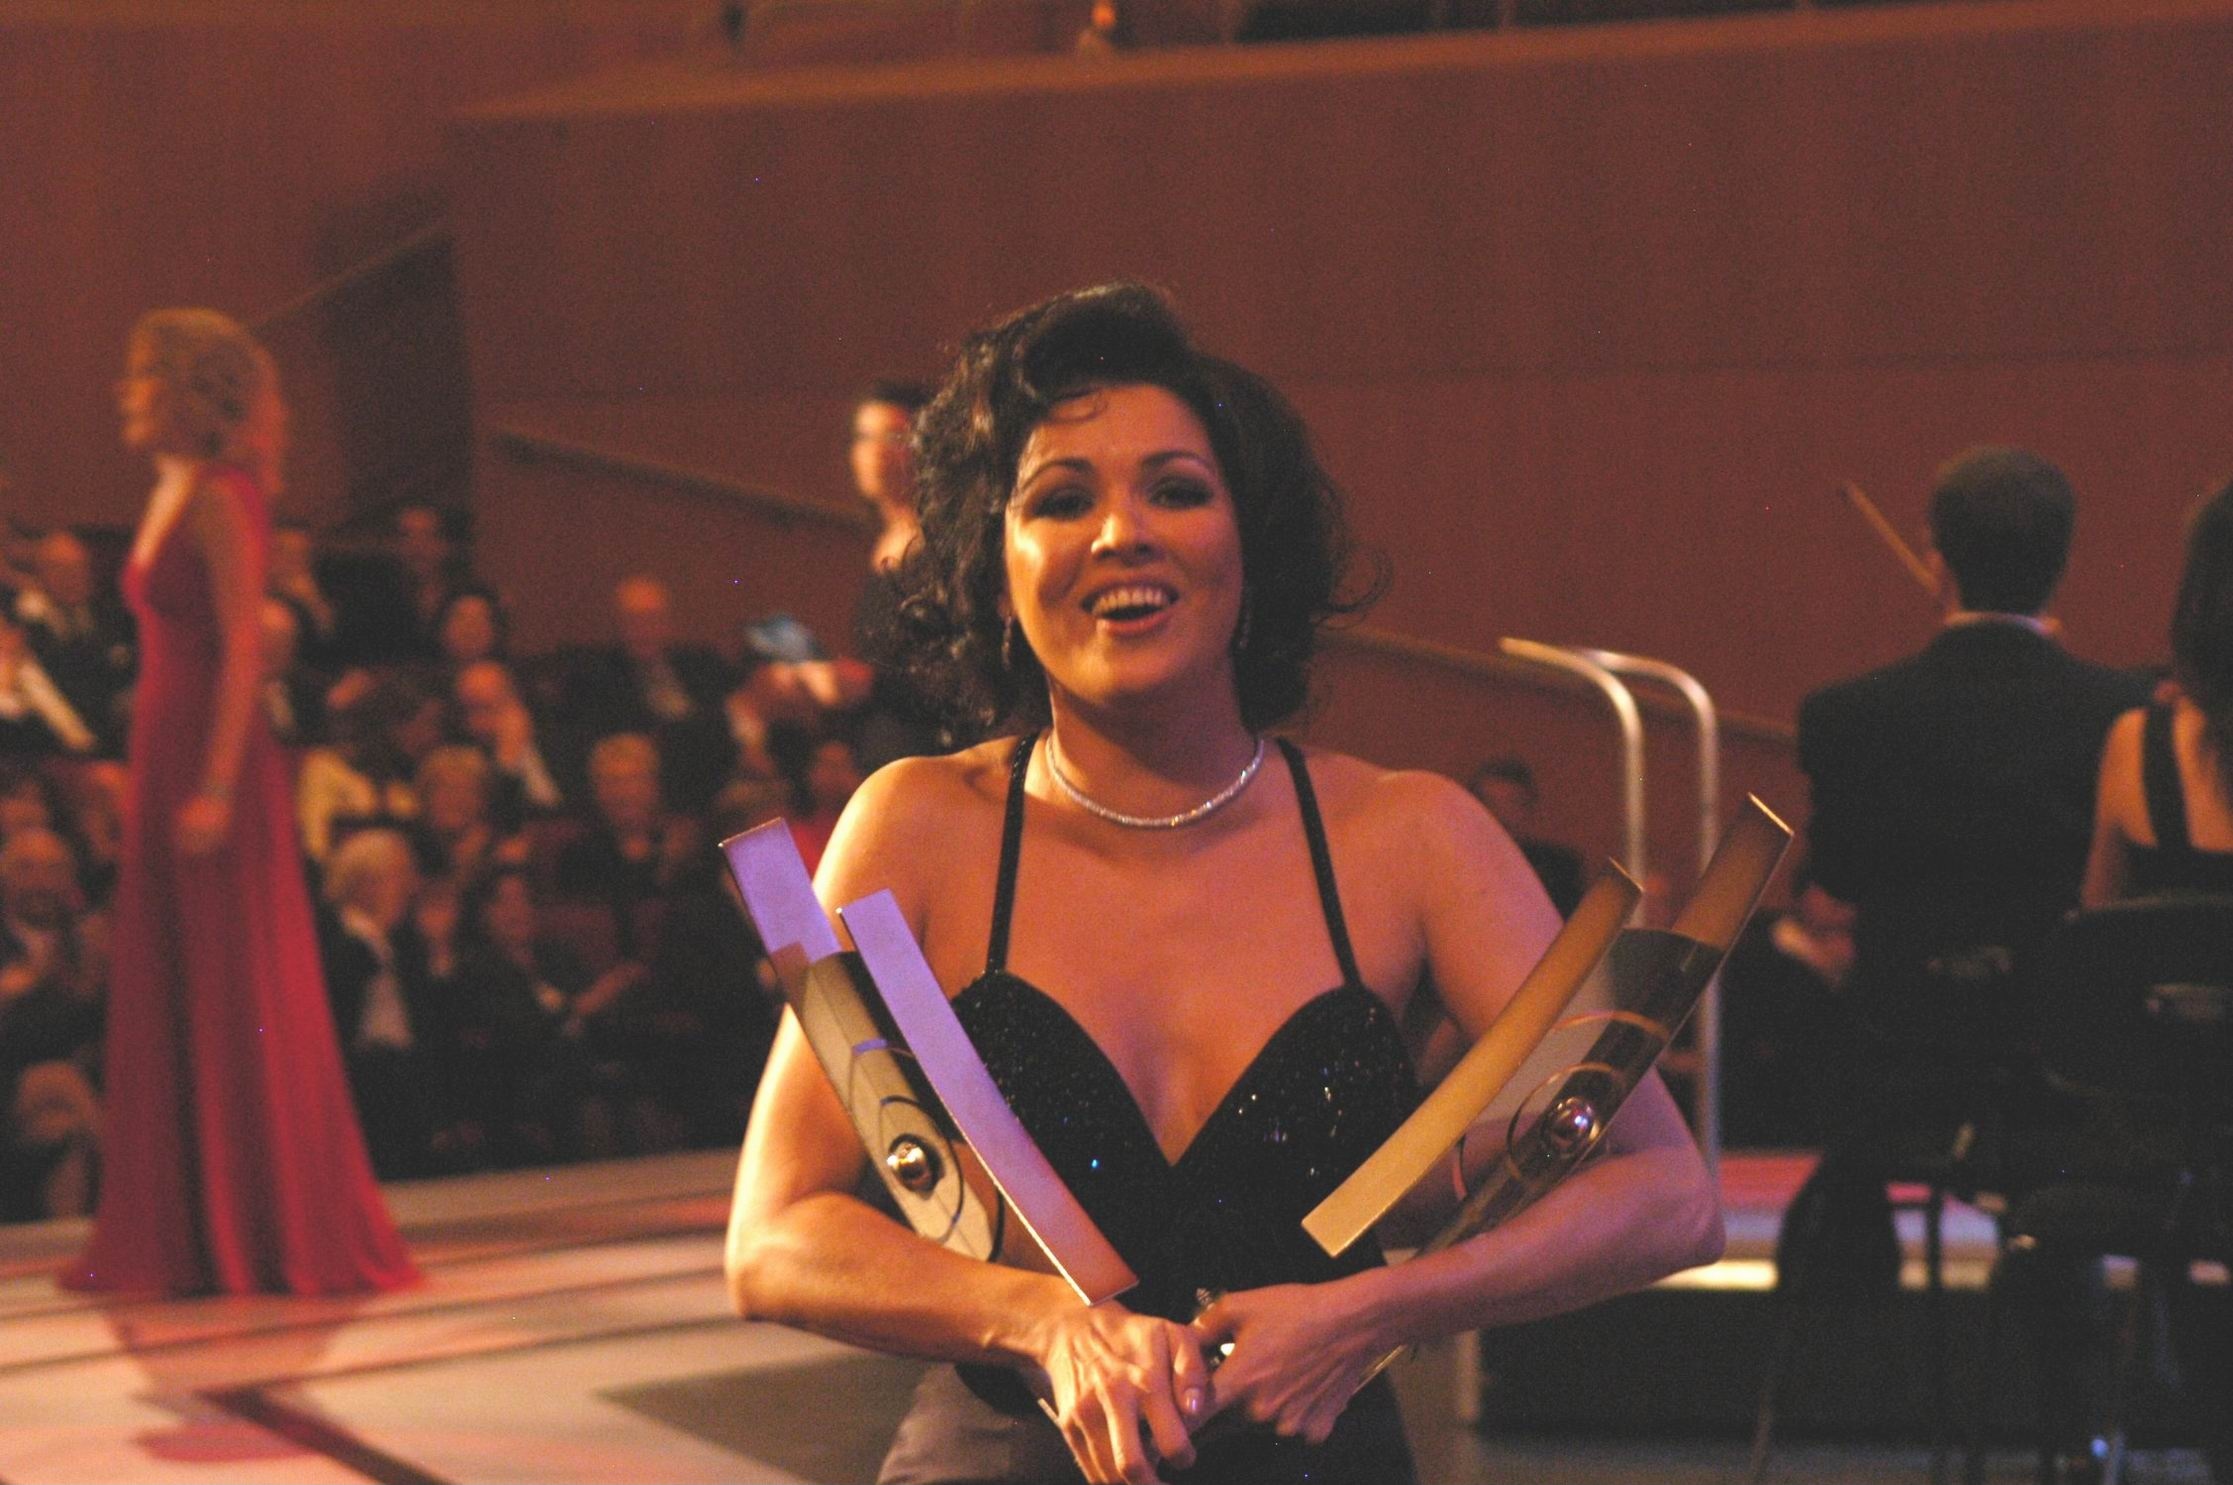 Opernsängerin Anna Netrebko mit ihren Preisen beim ECHO Klassik 2005